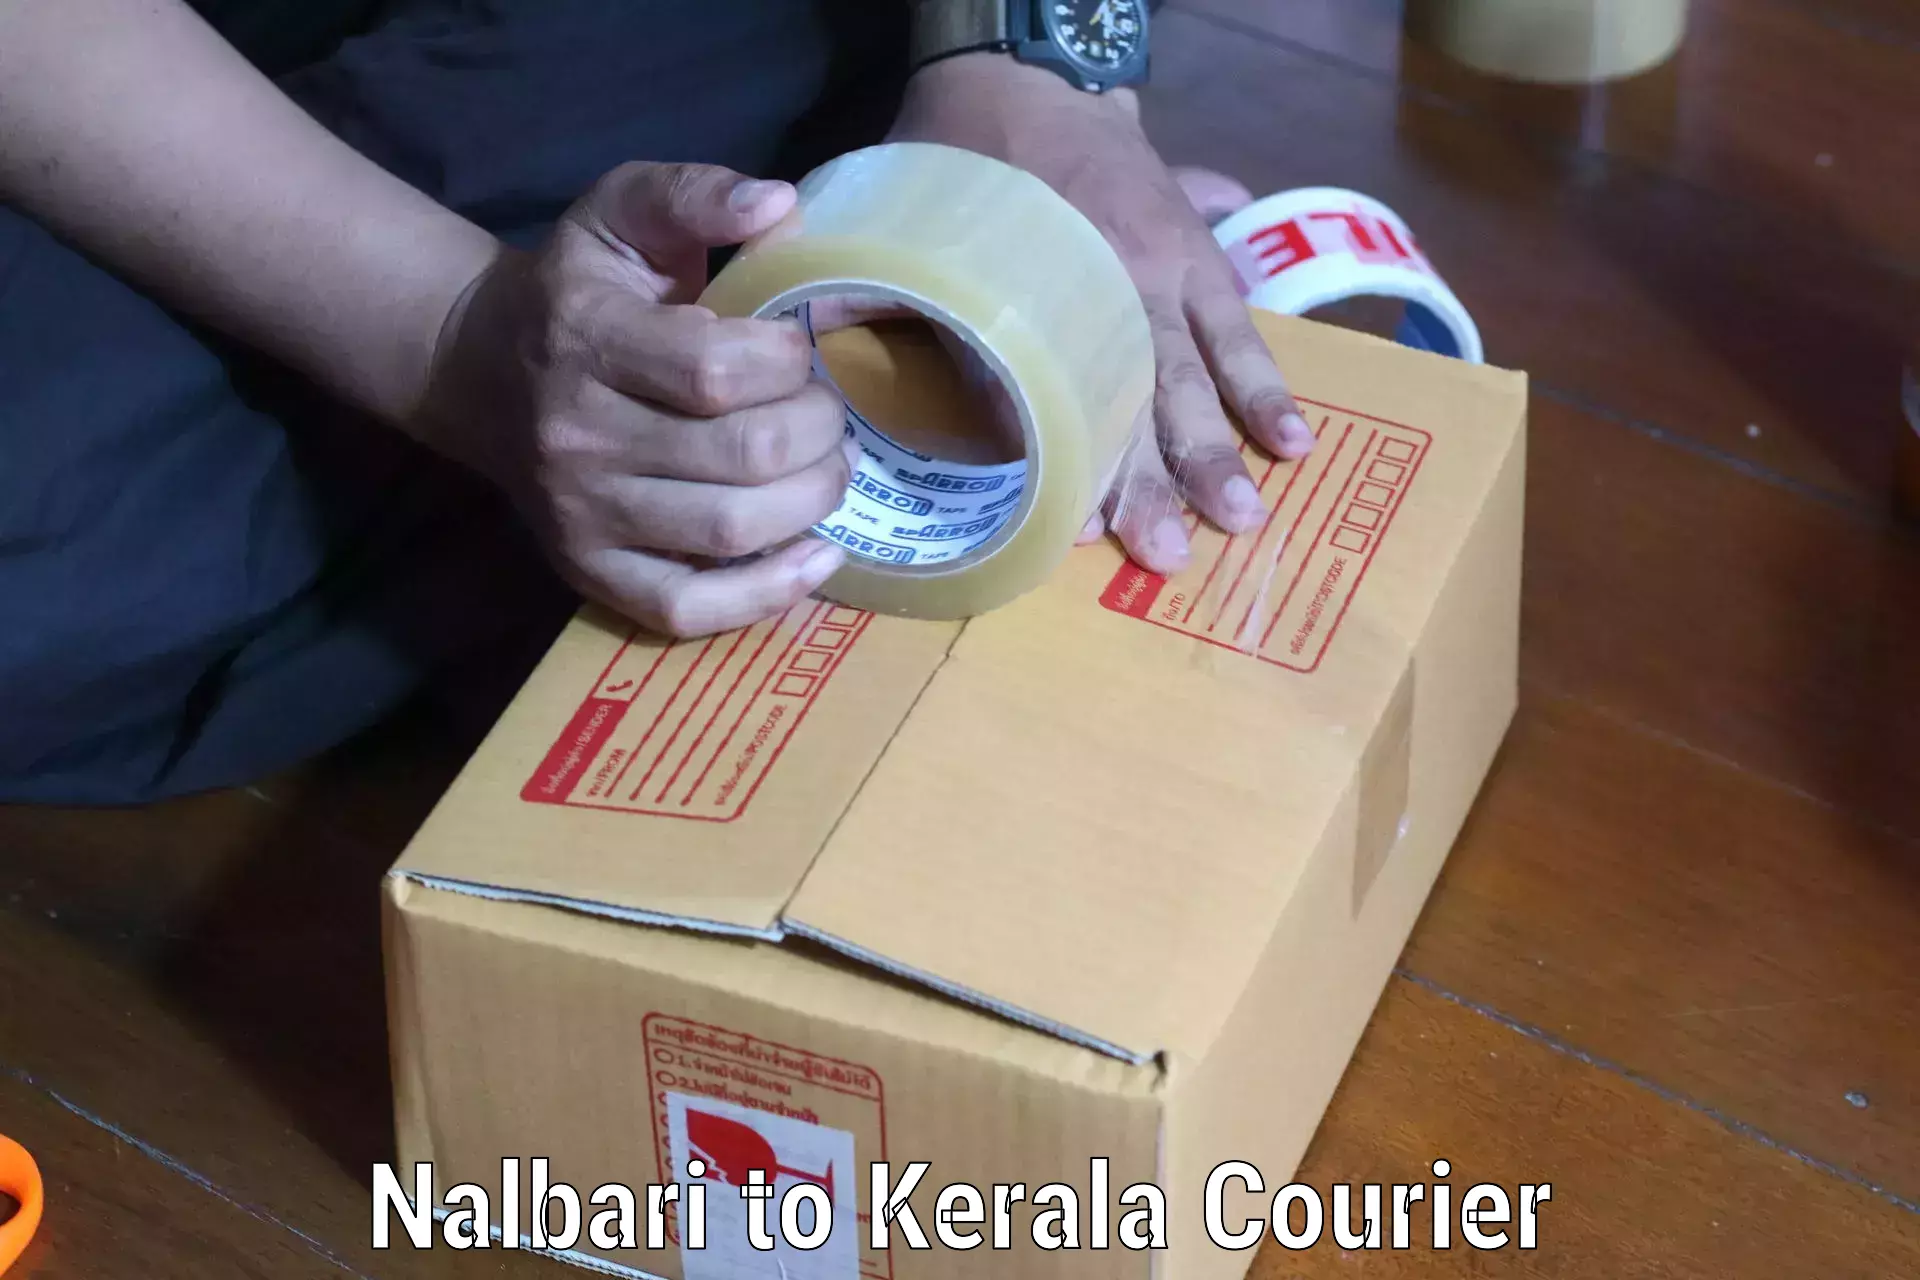 Urgent courier needs Nalbari to Palakkad